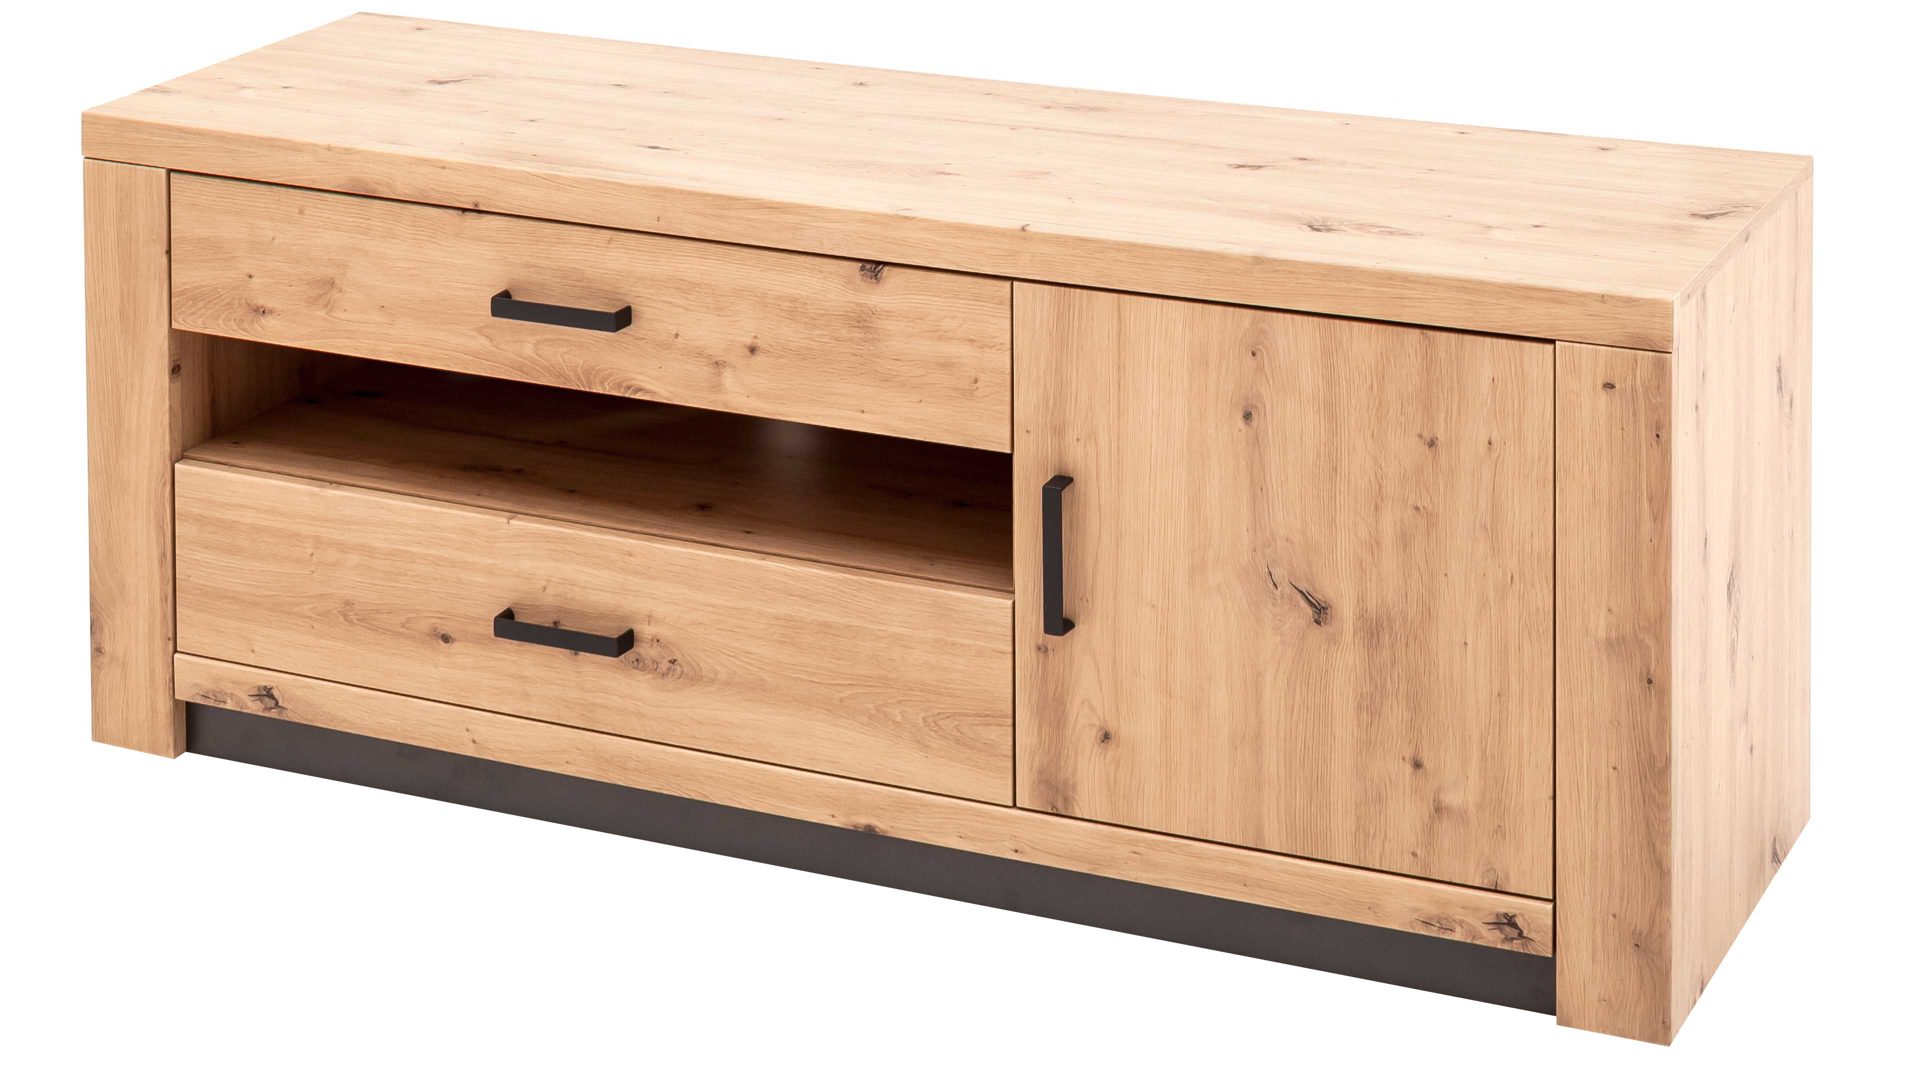 Lowboard Mca furniture aus Holz in Holzfarben Wohnprogramm Brüssel – Medien-Lowboard Balkeneiche & Anthrazit – eine Tür, eine Schublade